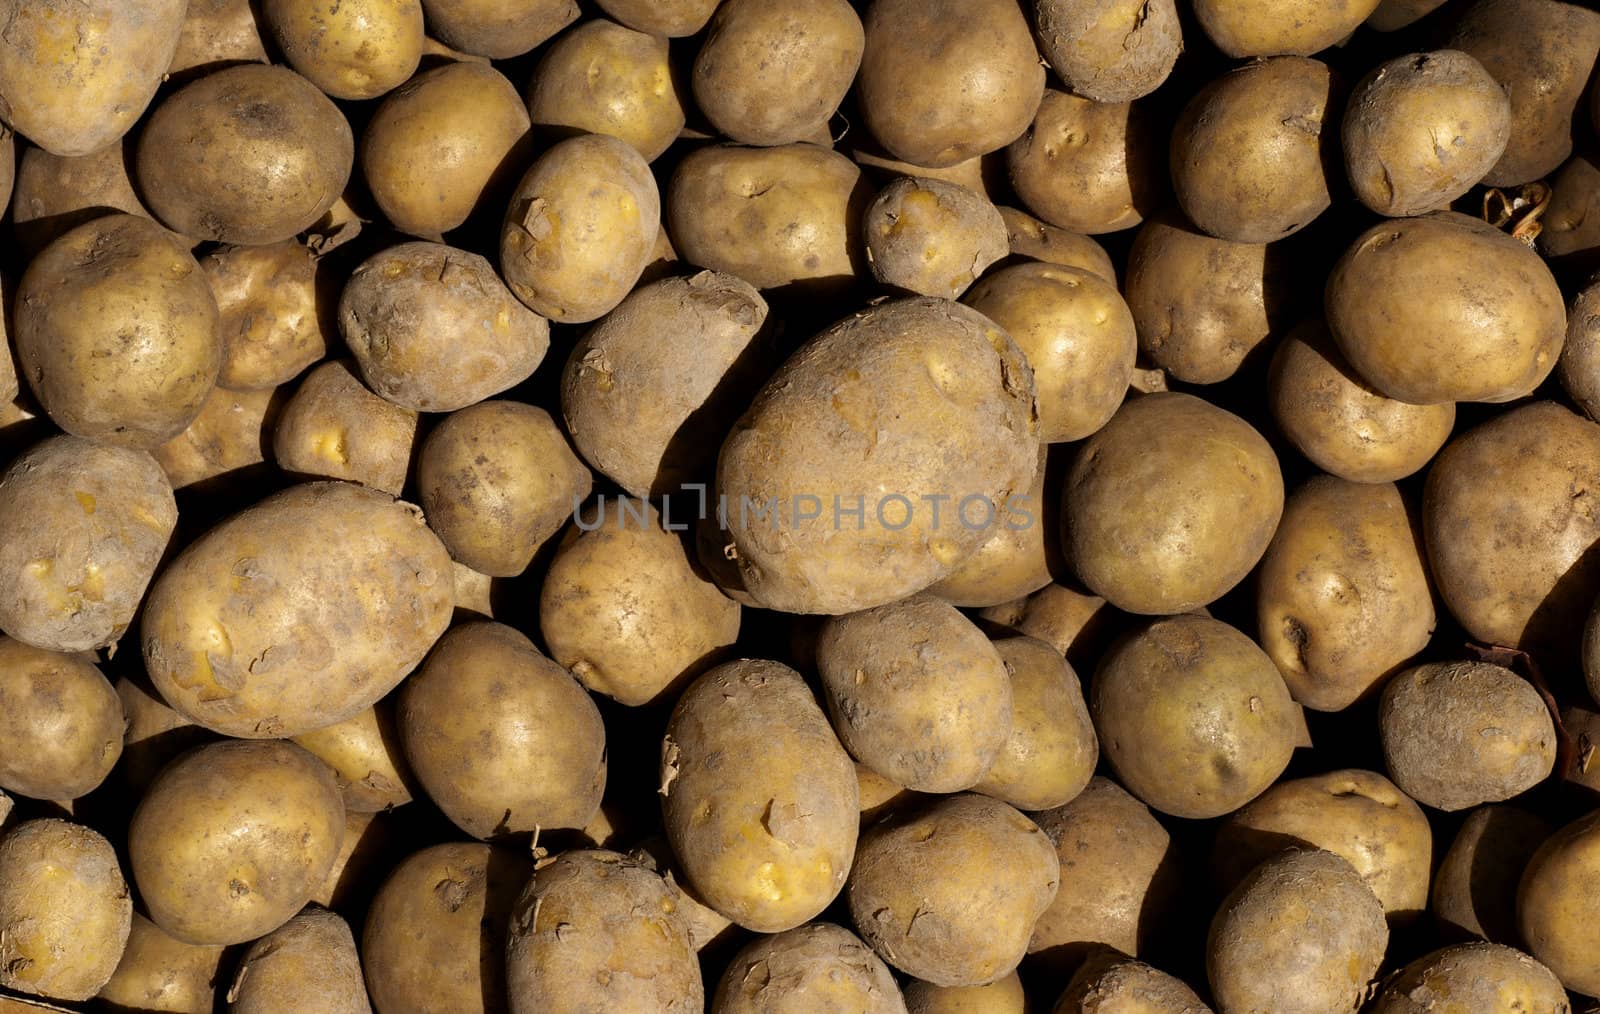 potatoes by bah69